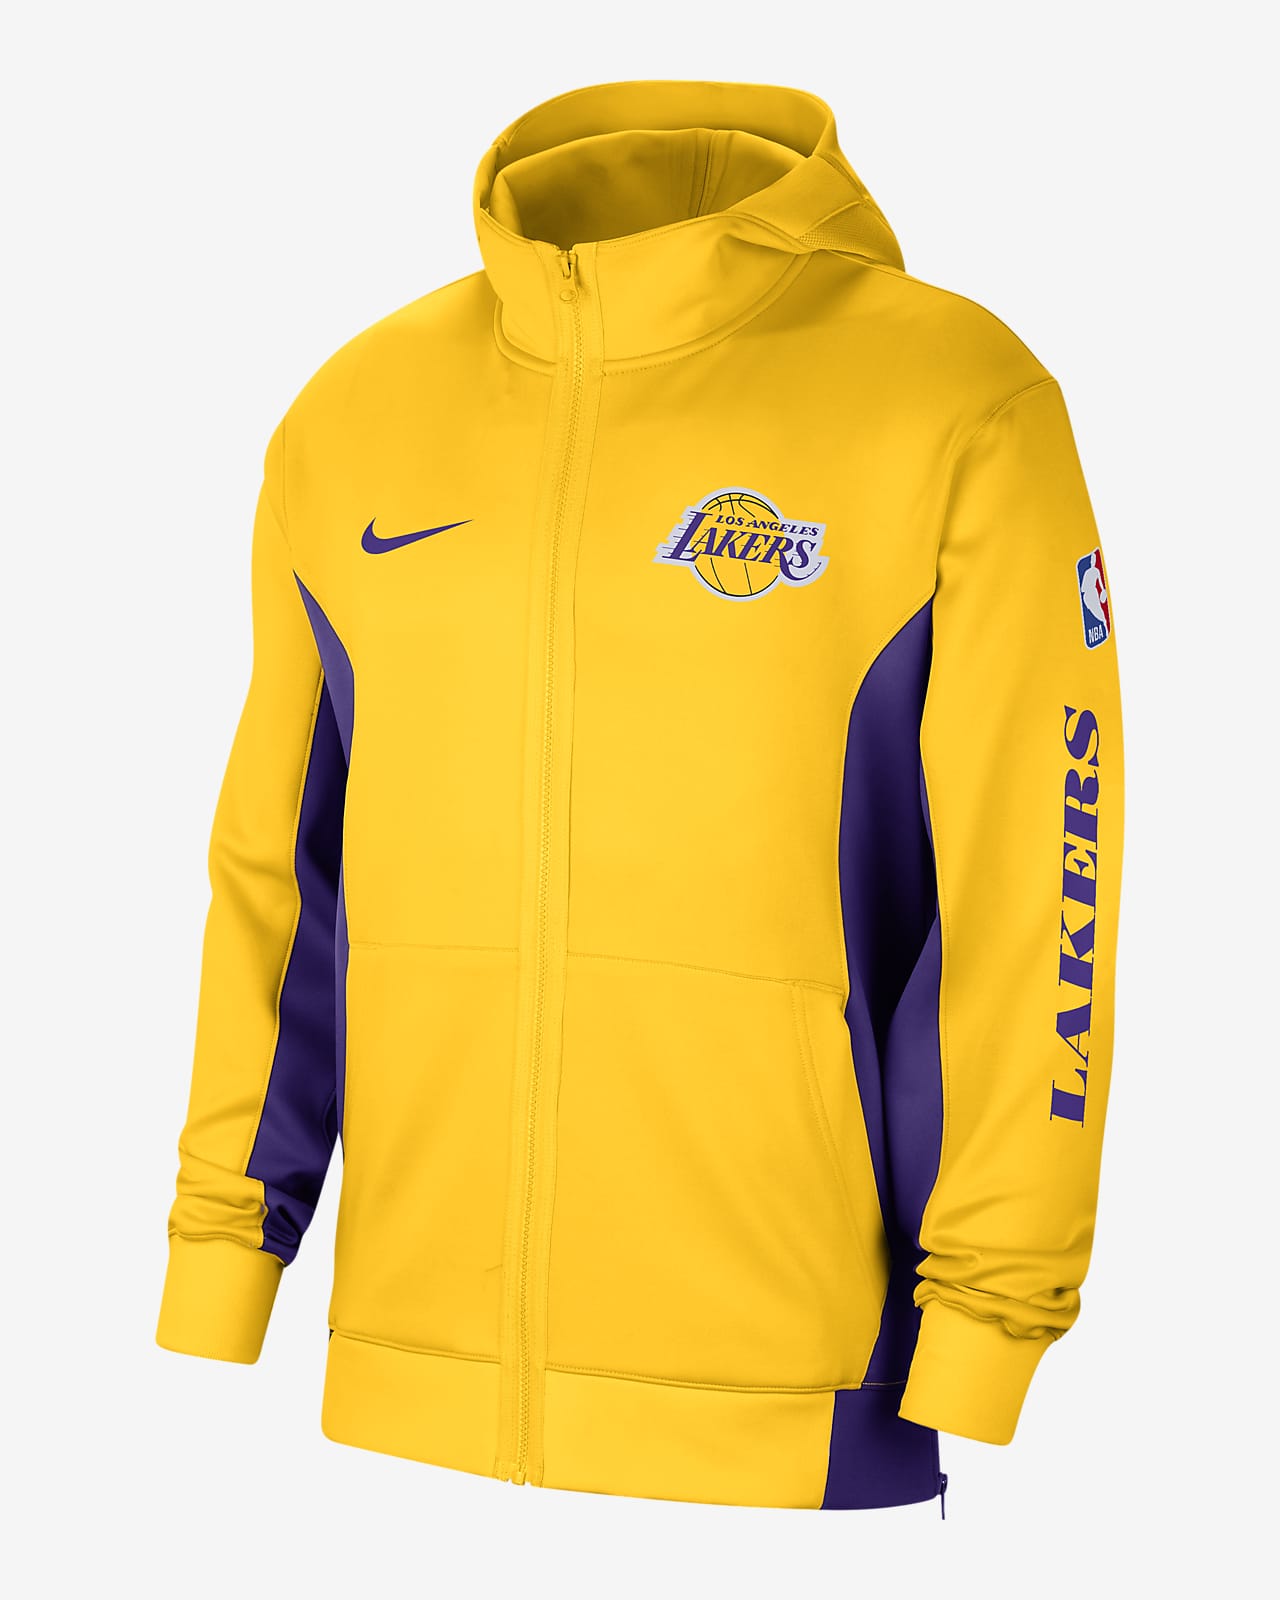 Los Angeles Lakers Nike Pre Game Short - Field Purple - Mens